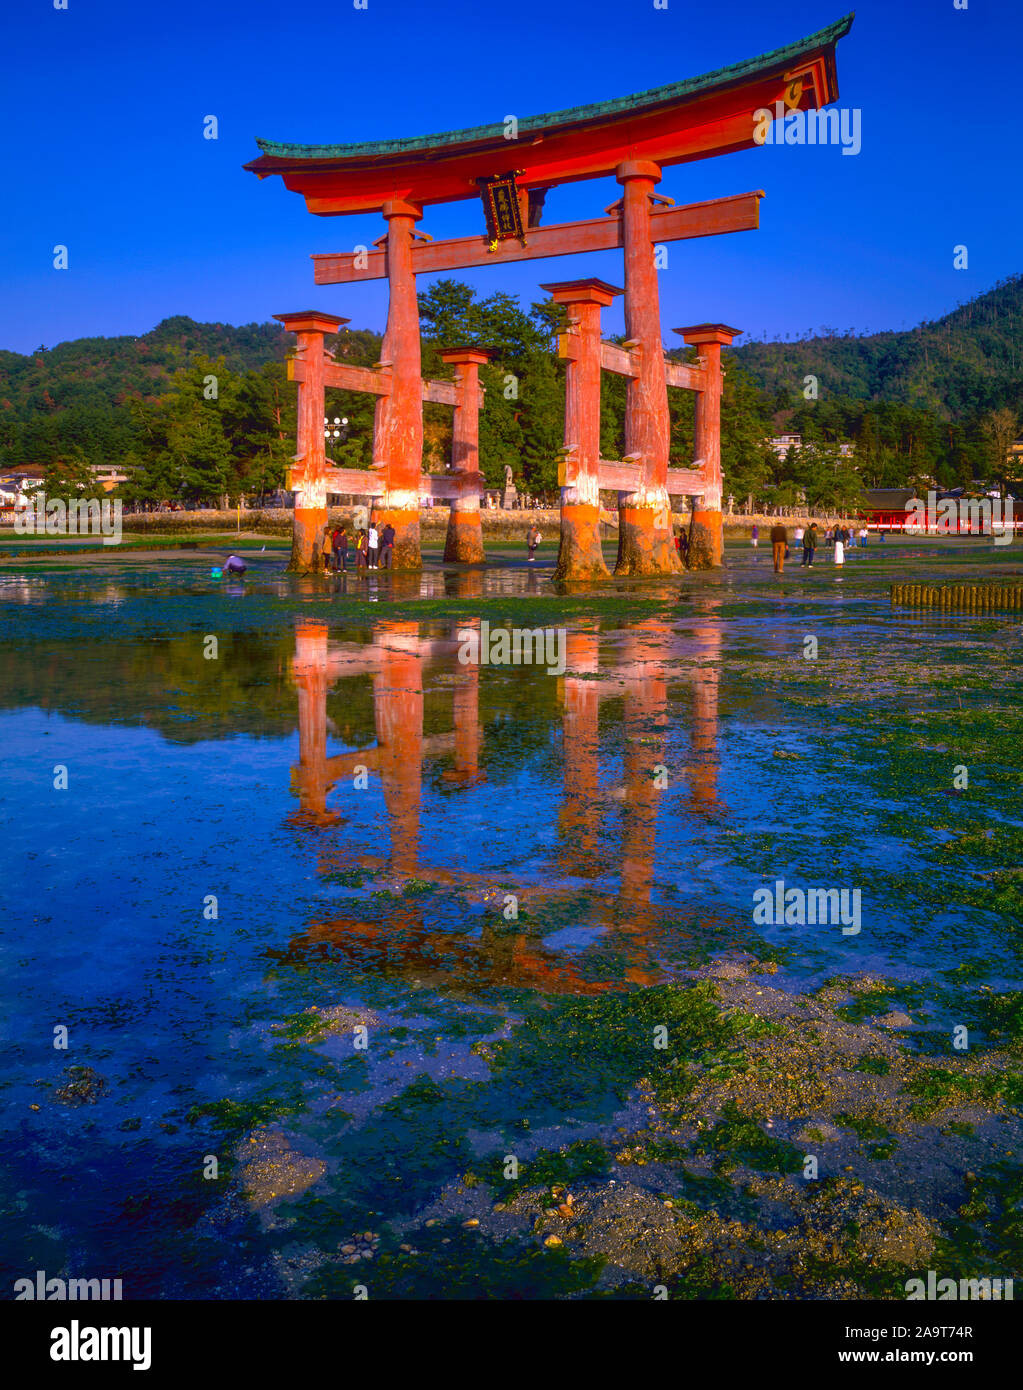 Le Torii flottant, Miyajima Isalnd, Japon, symbole du Japon construite en 1875, Montagnes et mer intérieure au-delà Banque D'Images